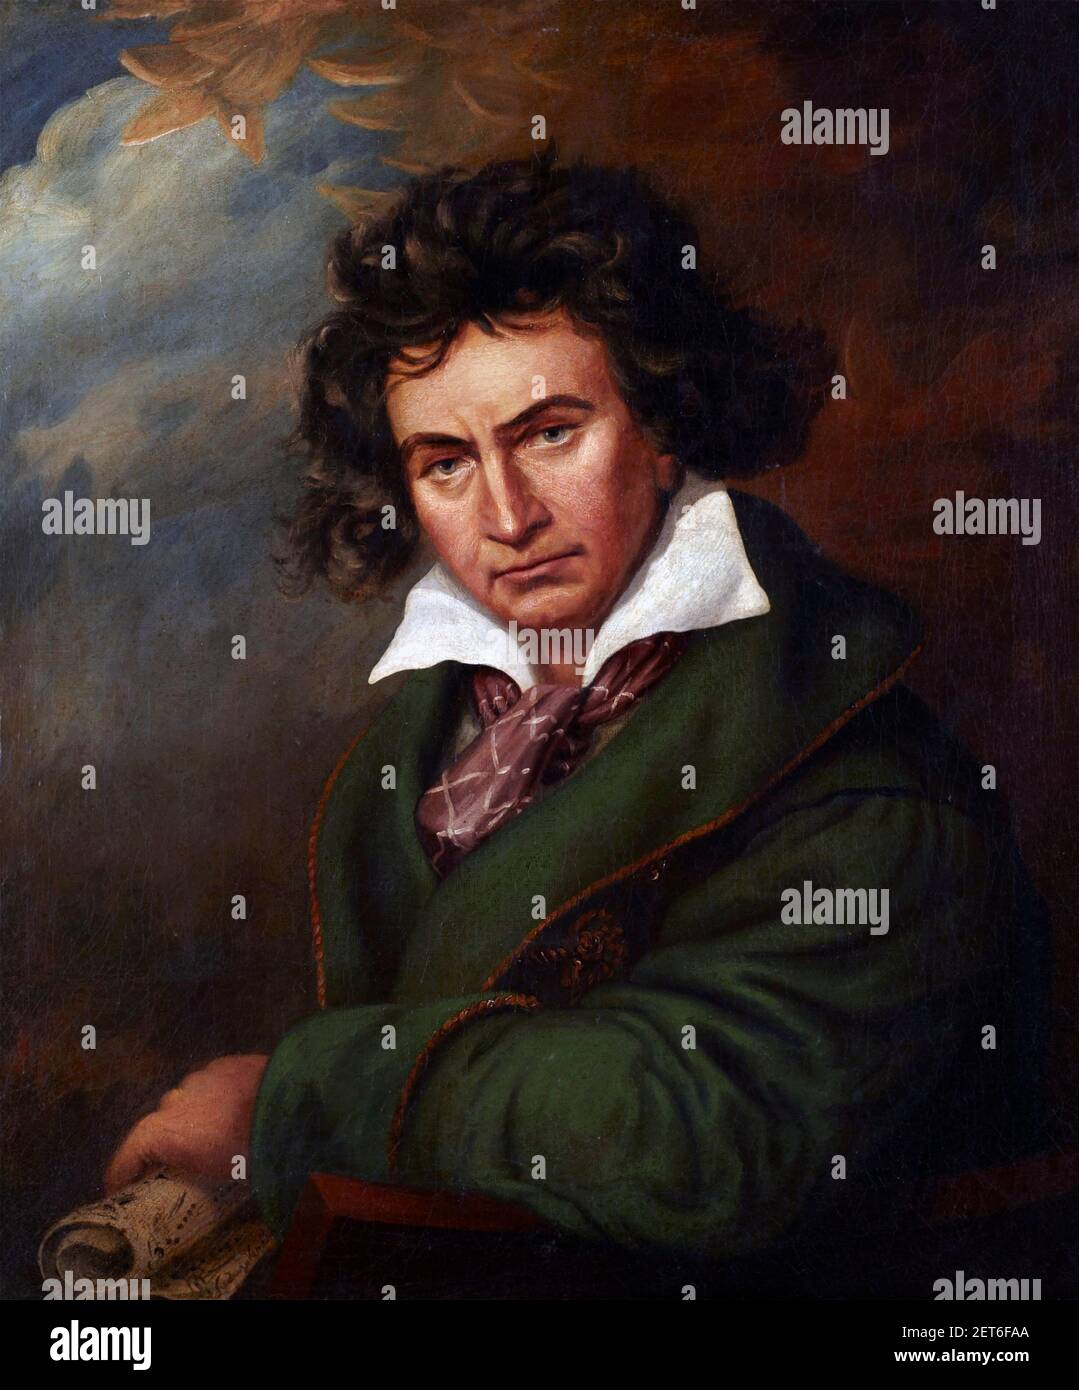 Beethoven; Portrait du compositeur allemand Ludwig van Beethoven (1770-1827) peint dans le style de Joseph Karl Stieler, après 1819 Banque D'Images